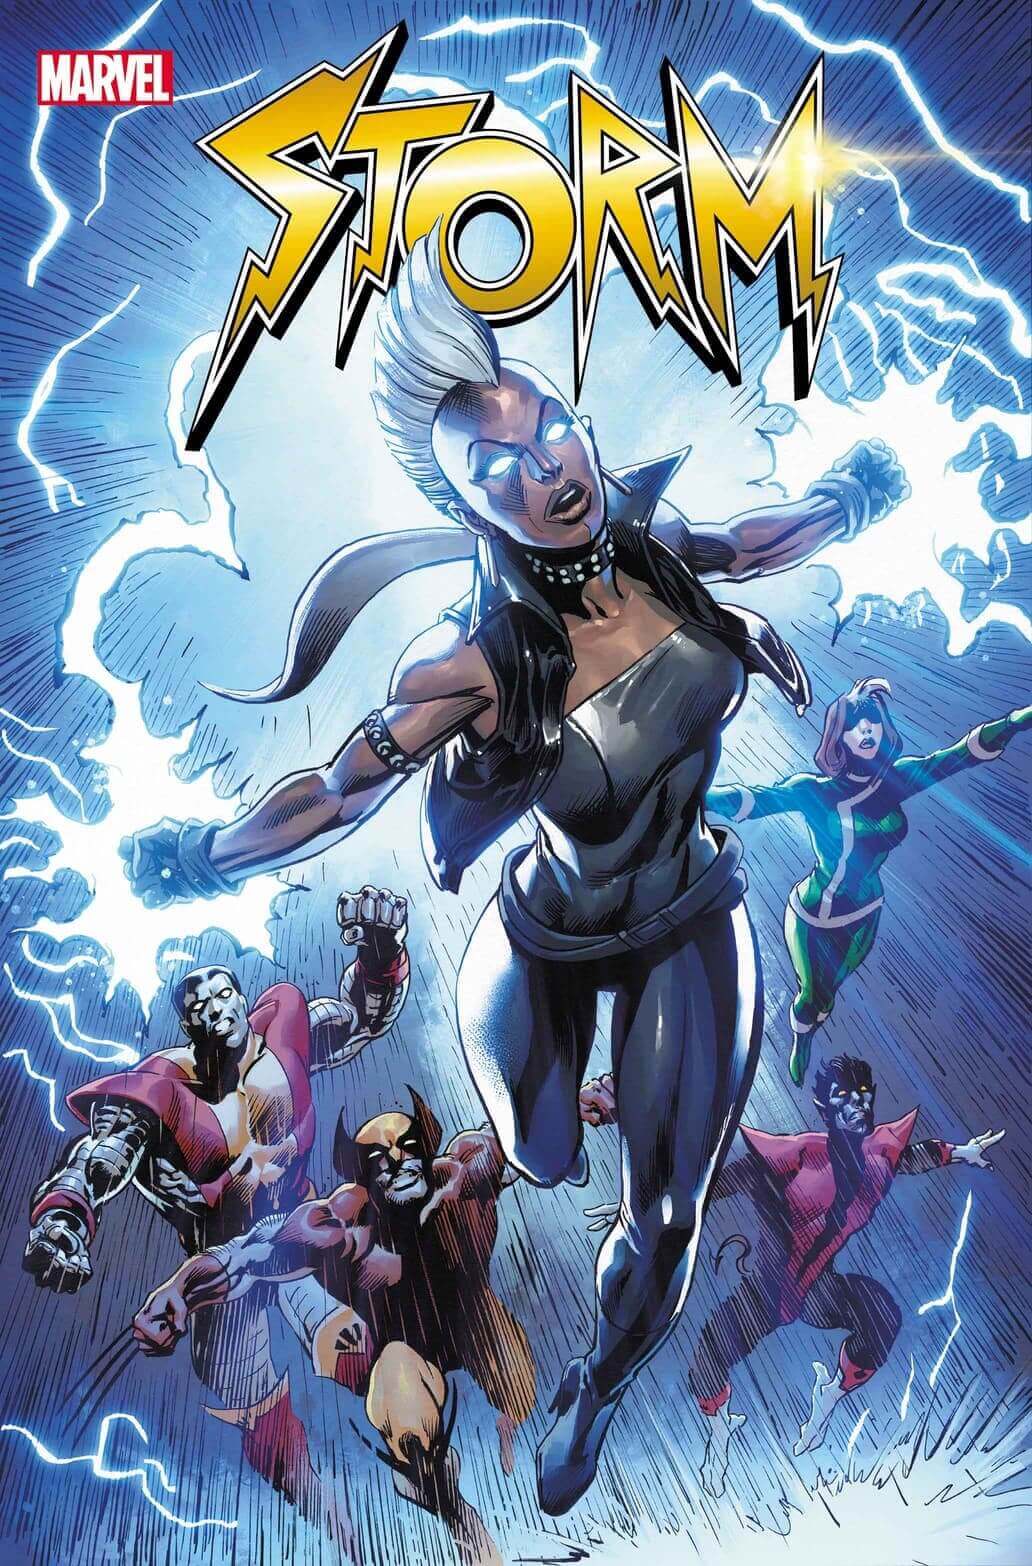 X-Men X-Men's Storm